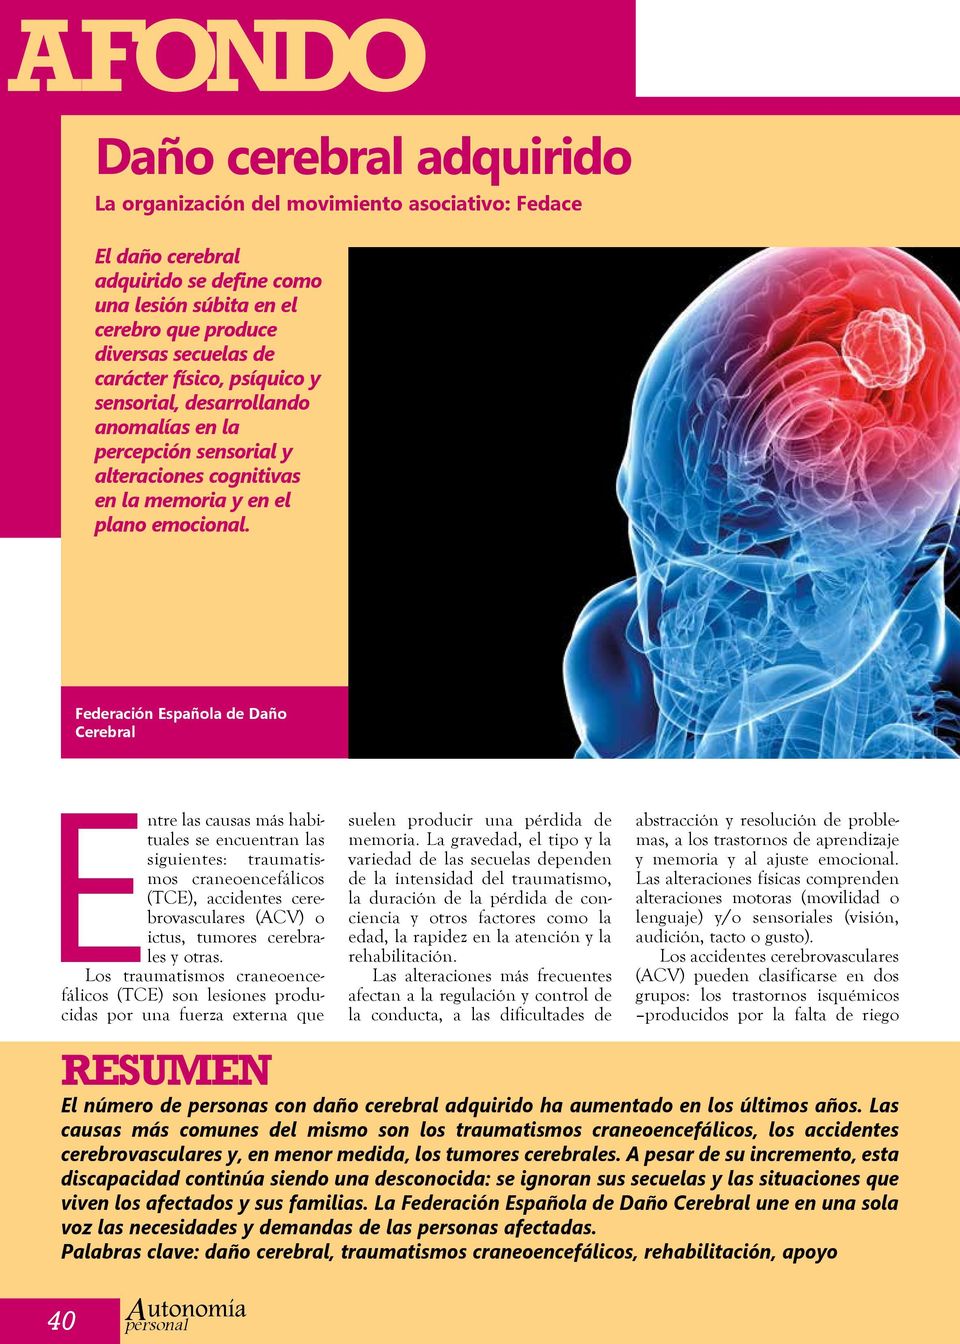 Federación Española de Daño Cerebral Entre las causas más habituales se encuentran las siguientes: traumatismos craneoencefálicos (TCE), accidentes cerebrovasculares (ACV) o ictus, tumores cerebrales